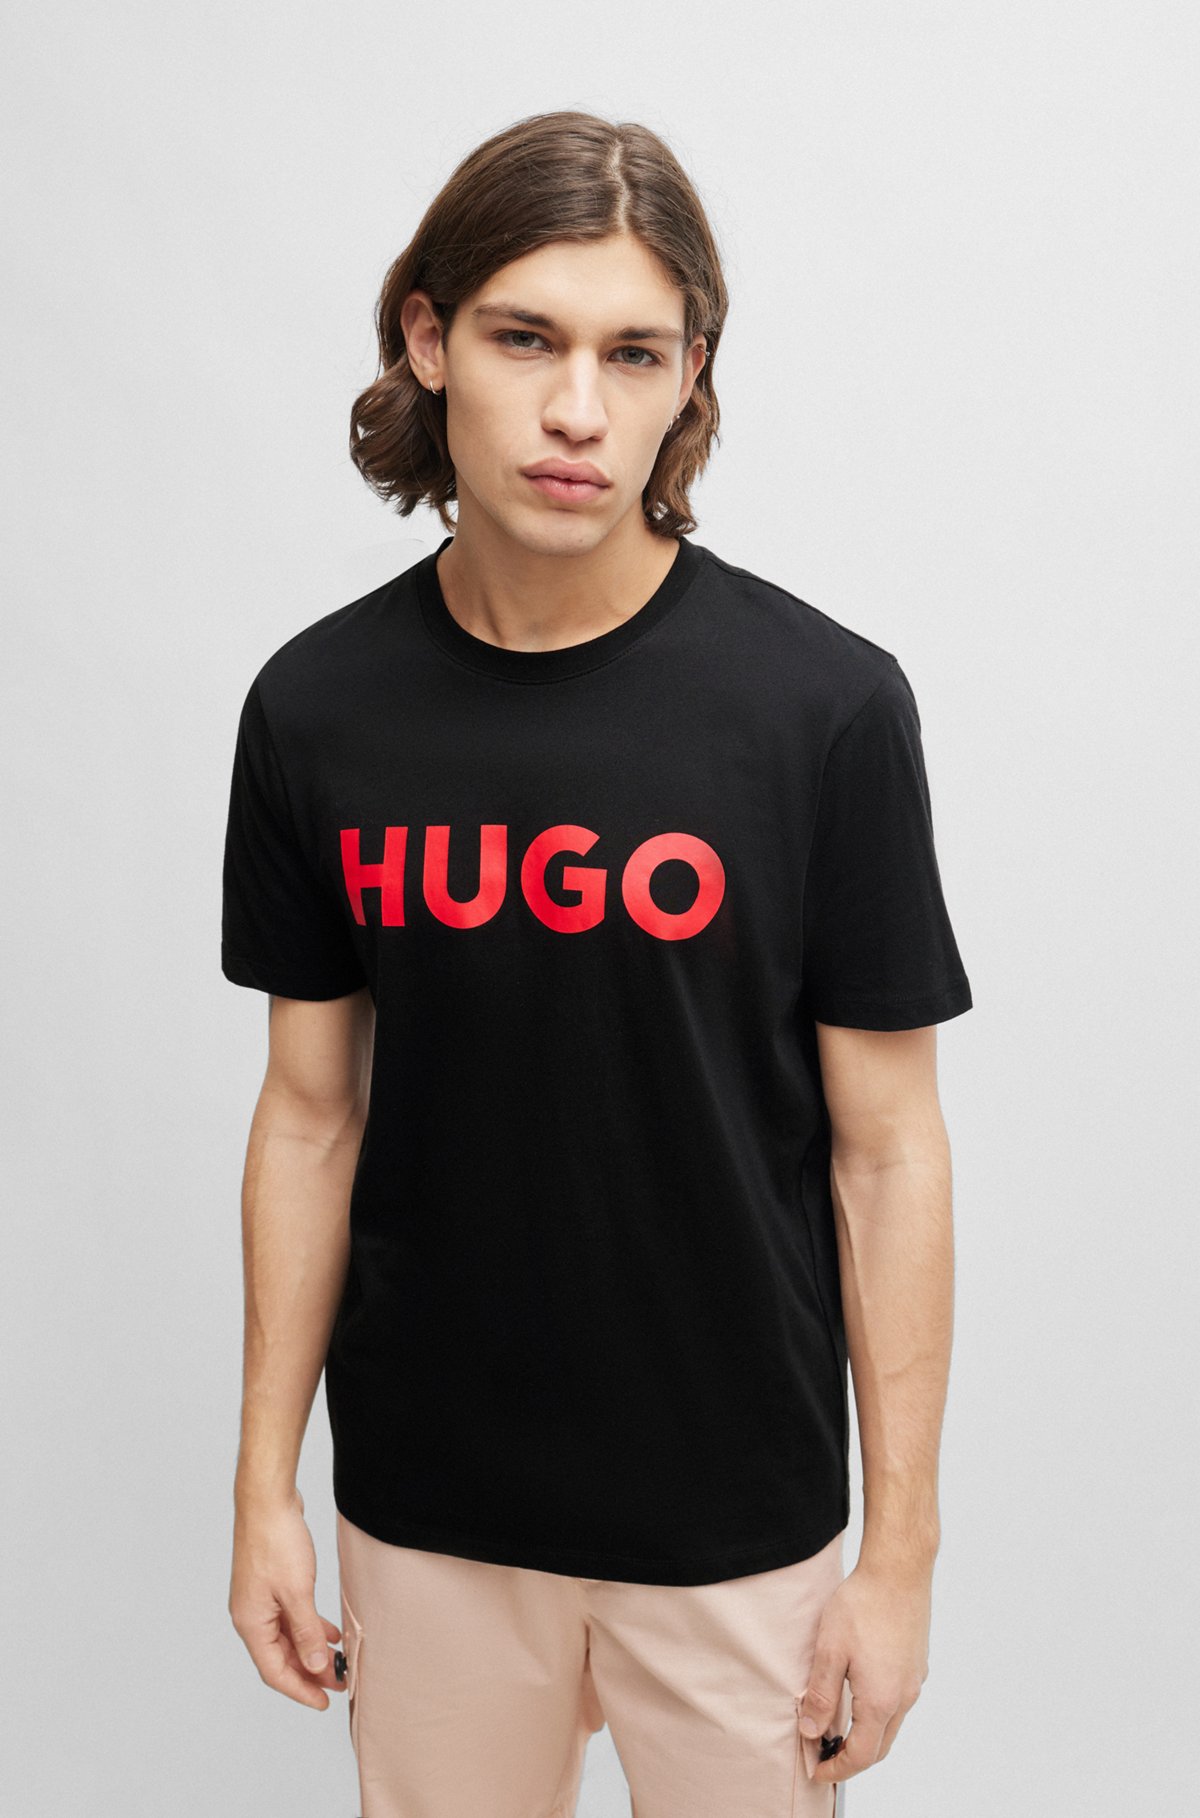 HUGO - コットンジャージー レギュラーフィットTシャツ コントラストロゴ